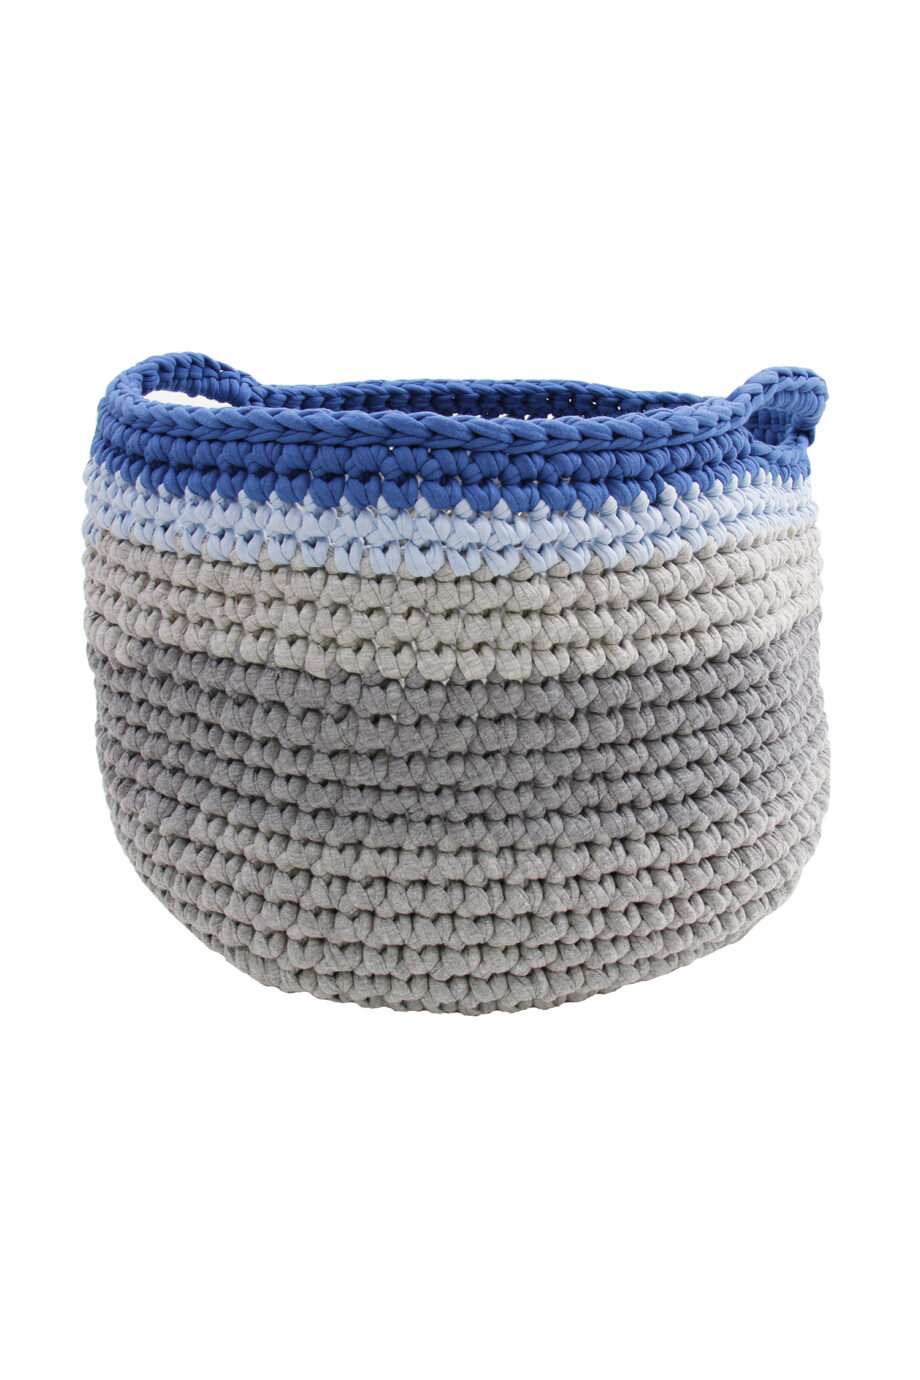 groovy jeans blue crochet cotton basket large